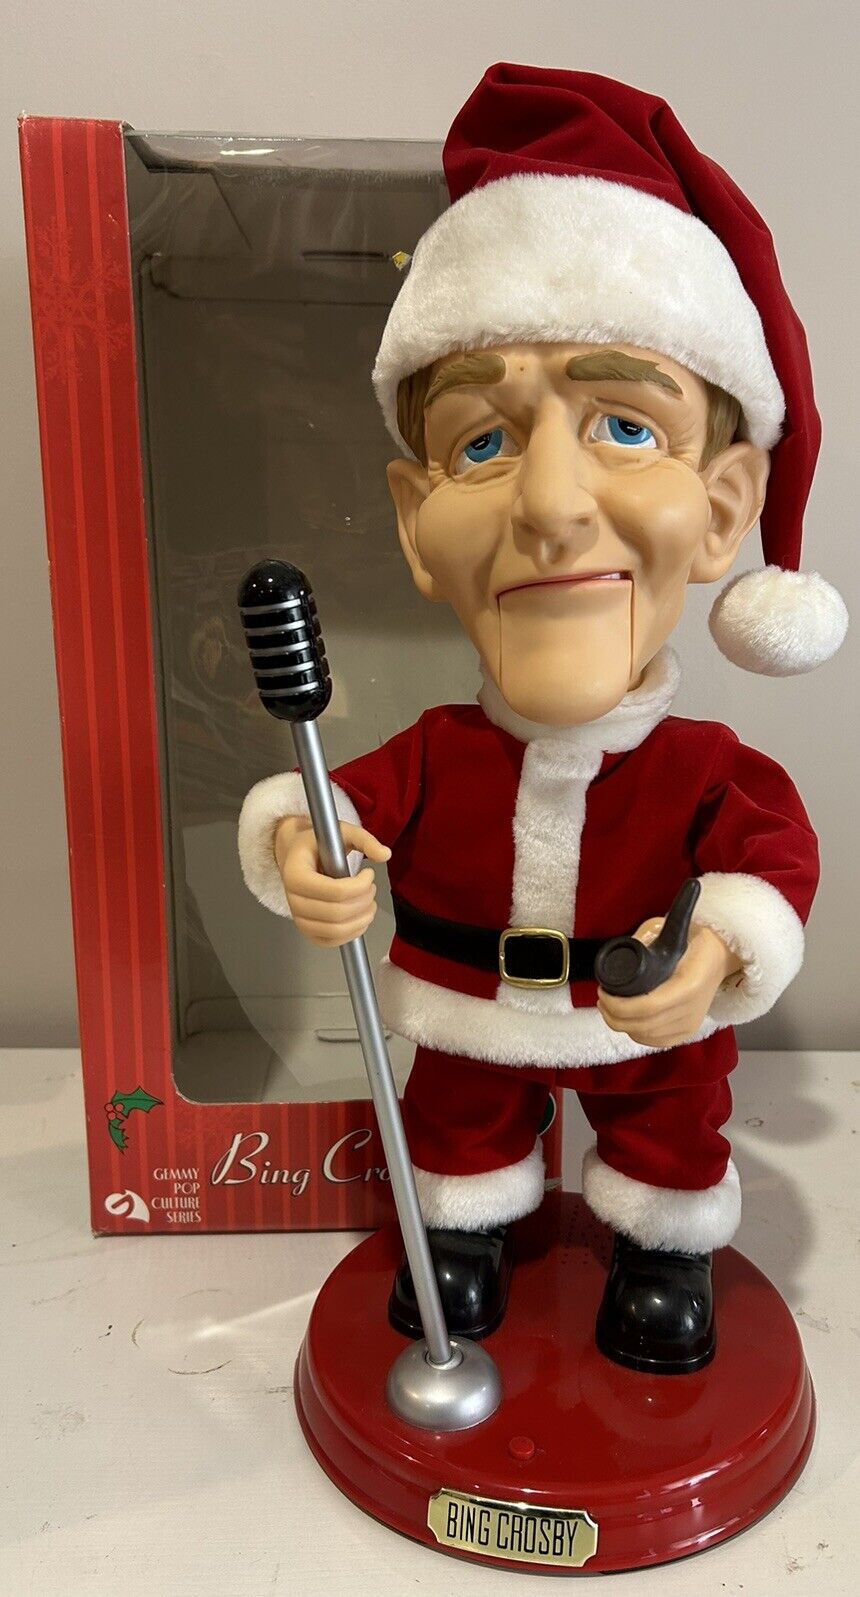 2001 Gemmy 19” Animated Singing & Swinging Bing Crosby Santa Doll With Box *Read